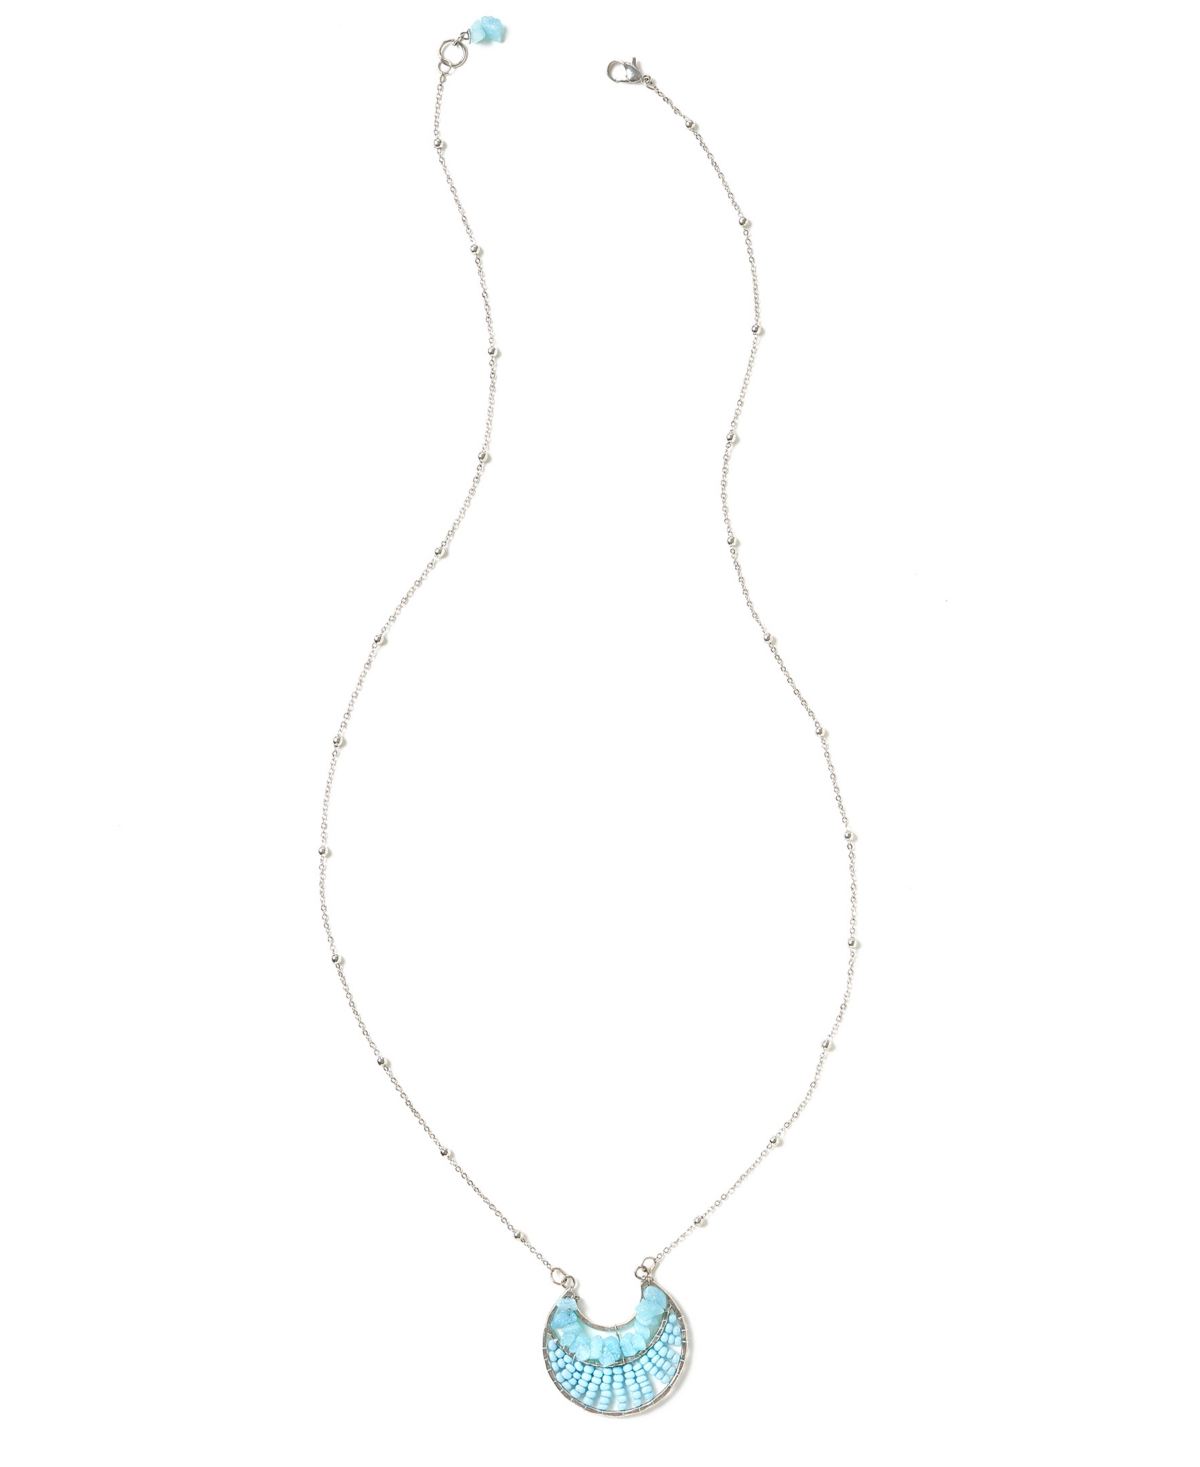 Amazonite Silver-Tone Necklace - Blue